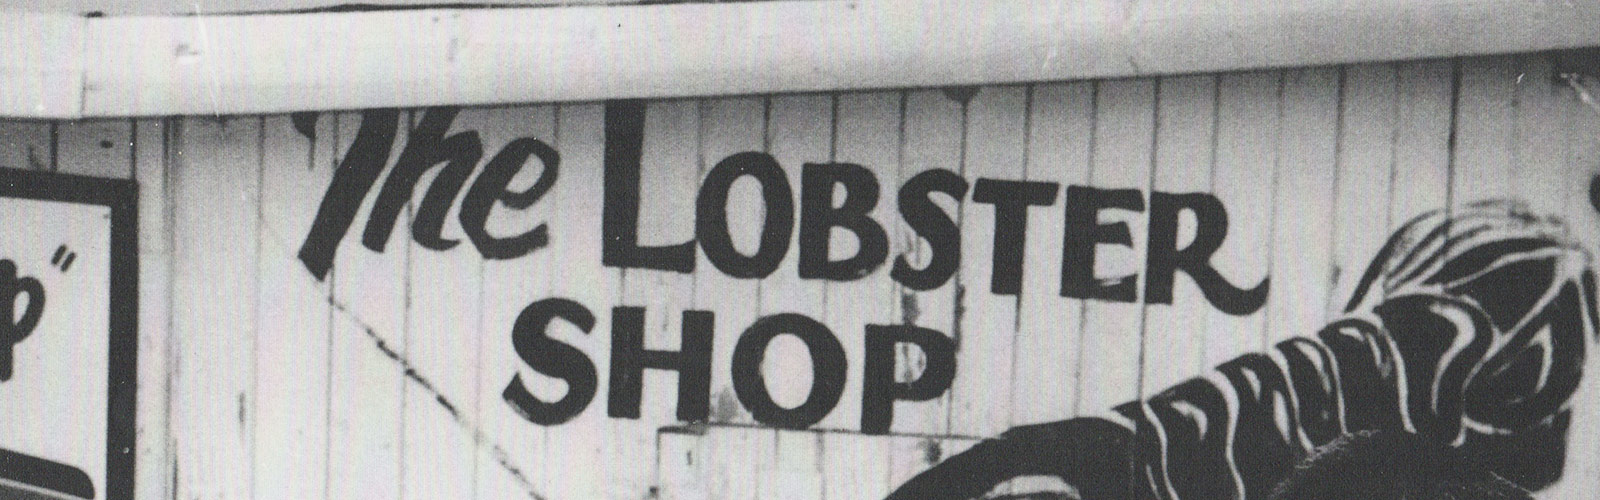 Slider_Lobster_Shop